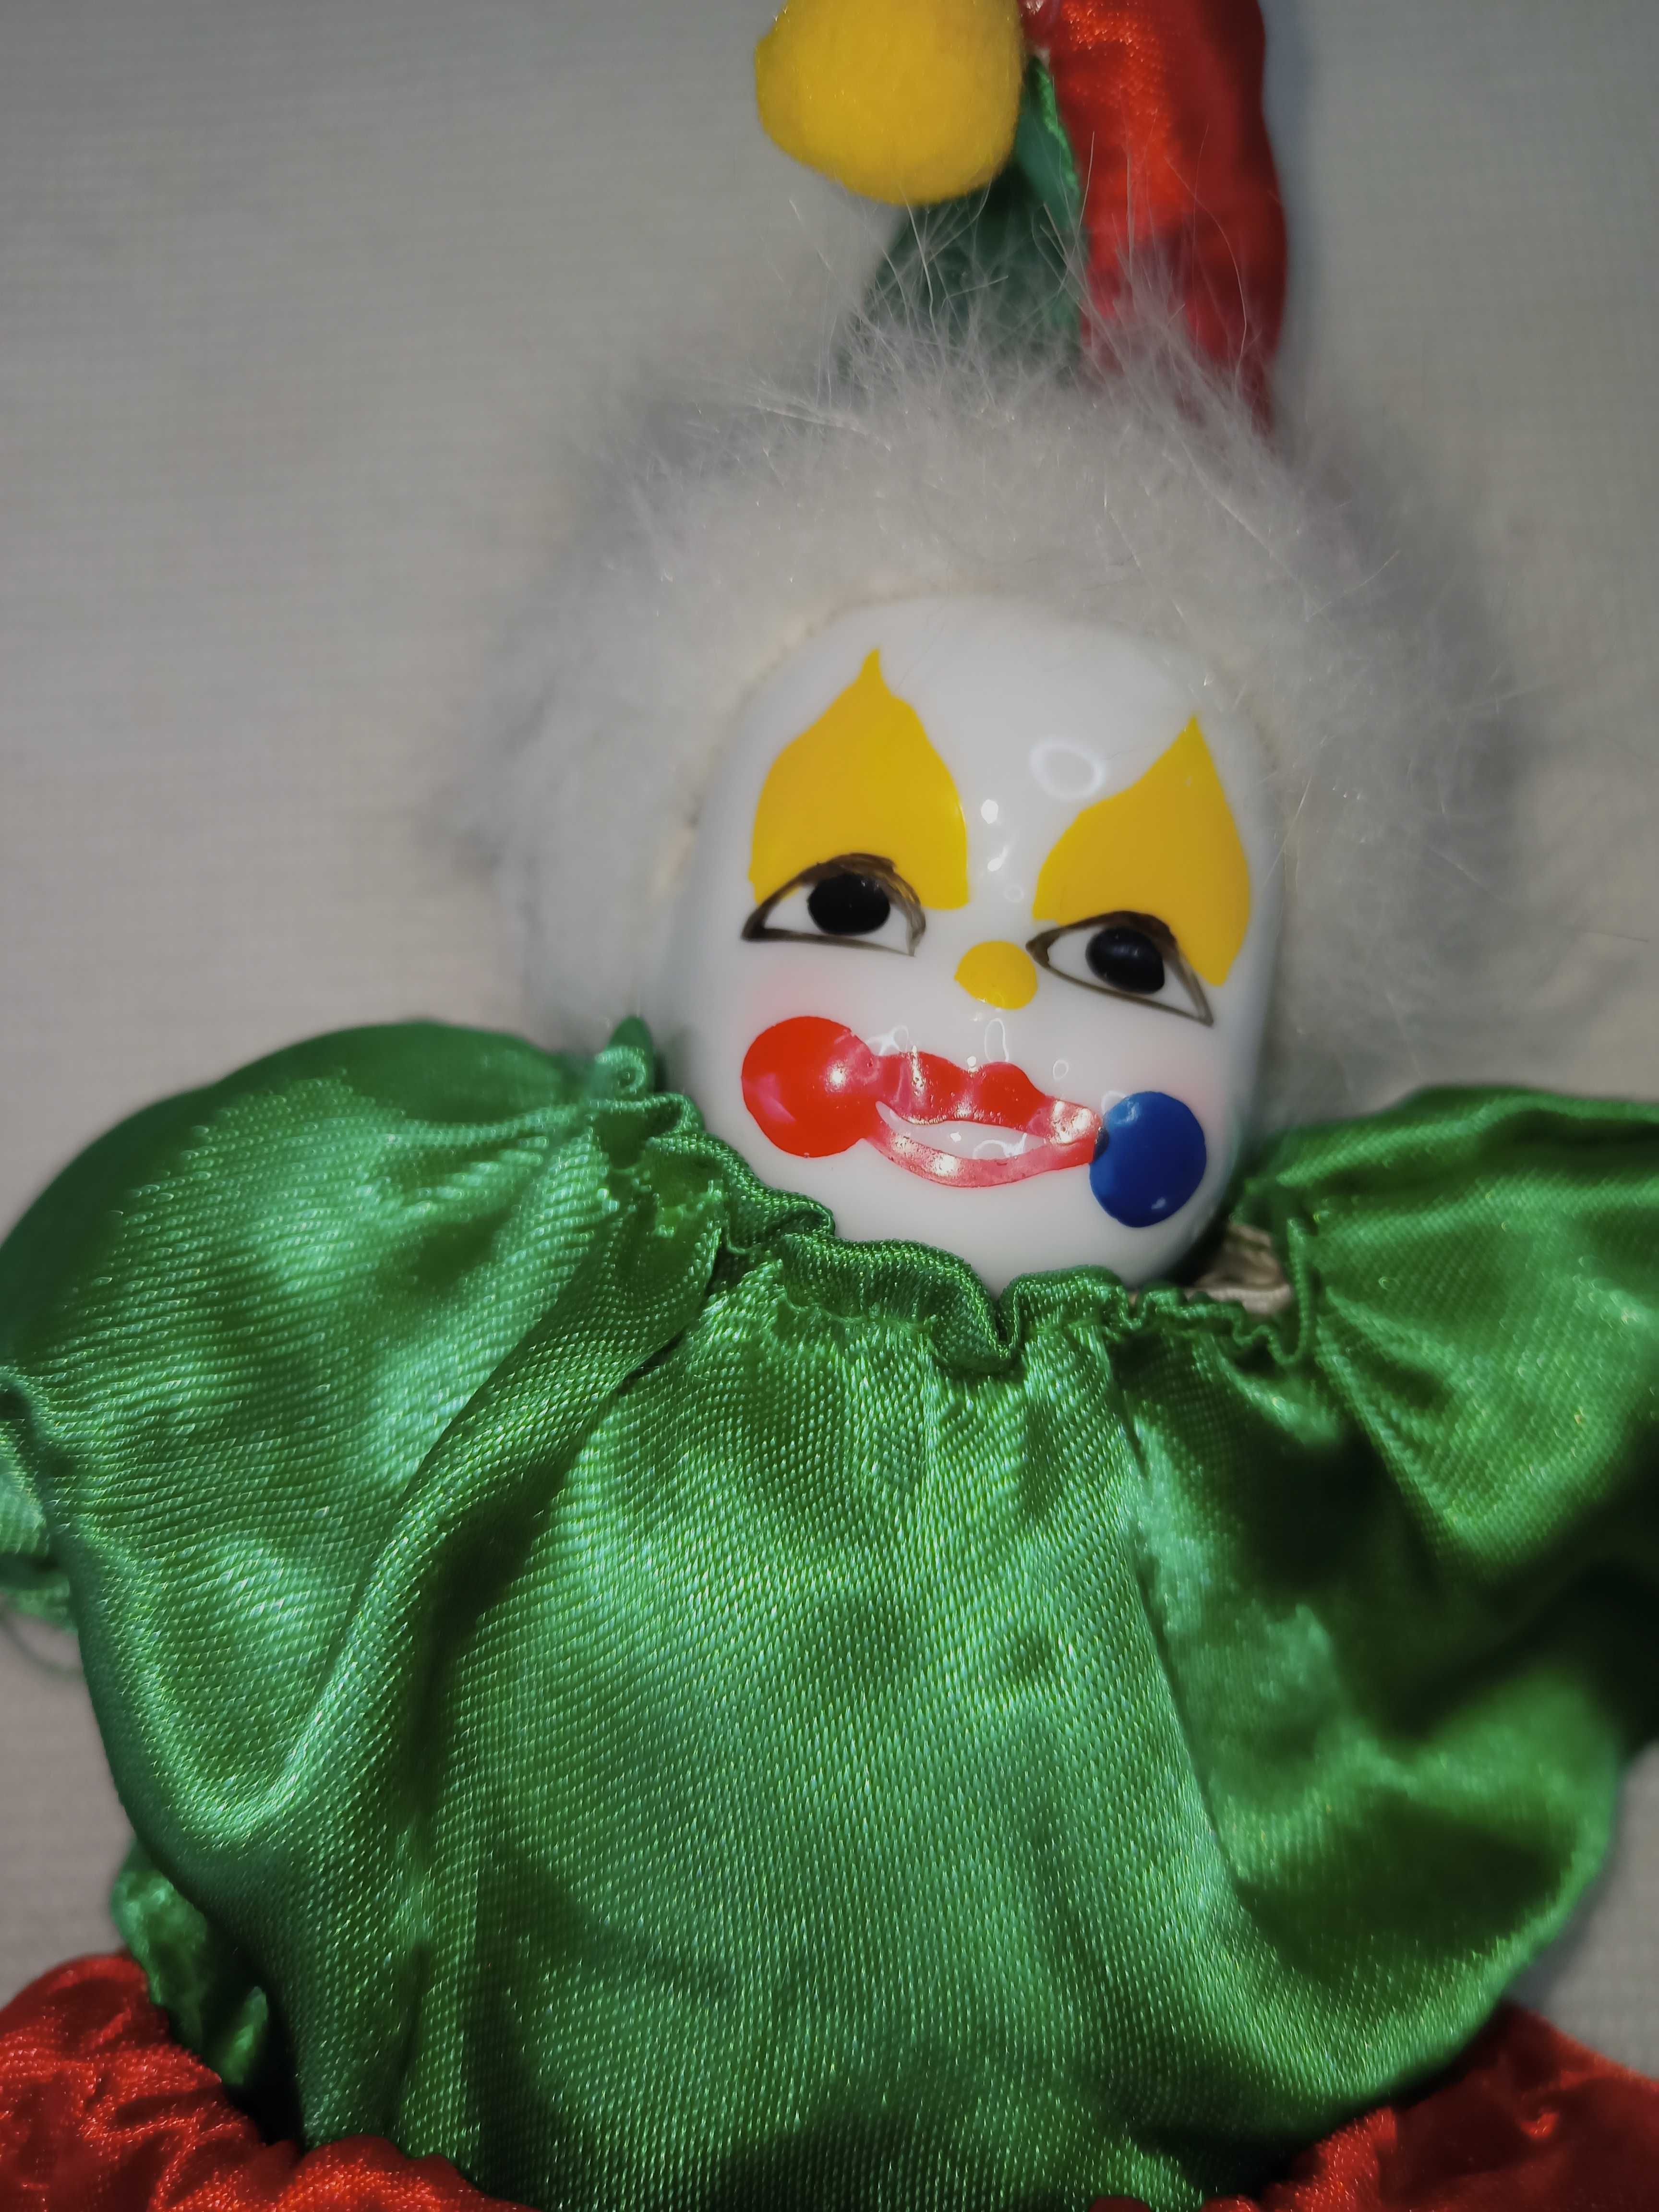 Коллекционная кукла Арлекин.
Статуэтка Клоун. Сувенирная игрушка